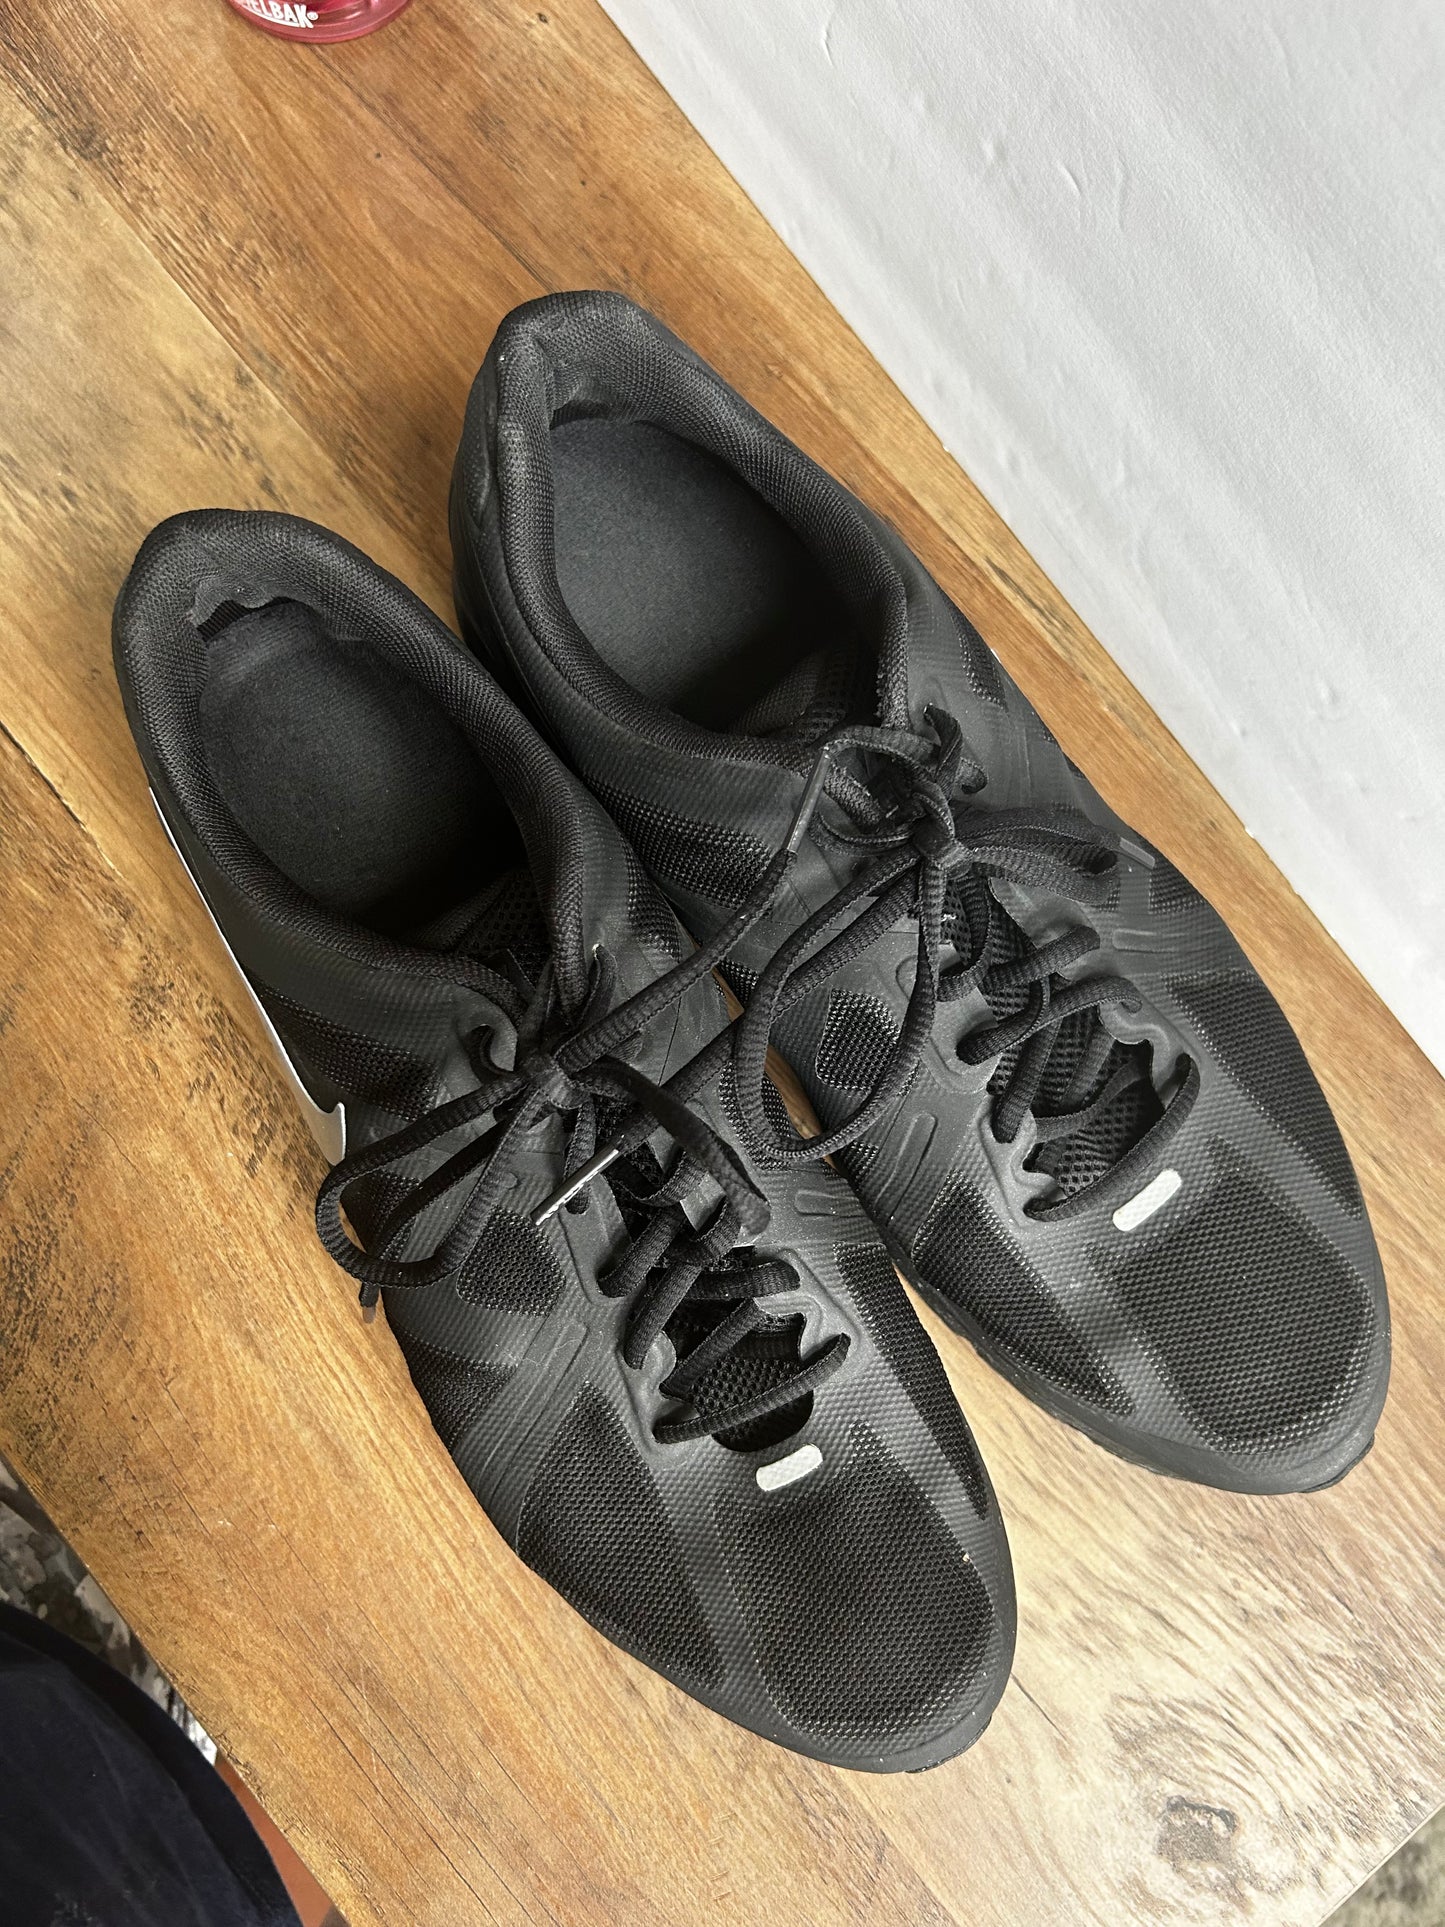 Size 12 Men's Black Nike AirMax